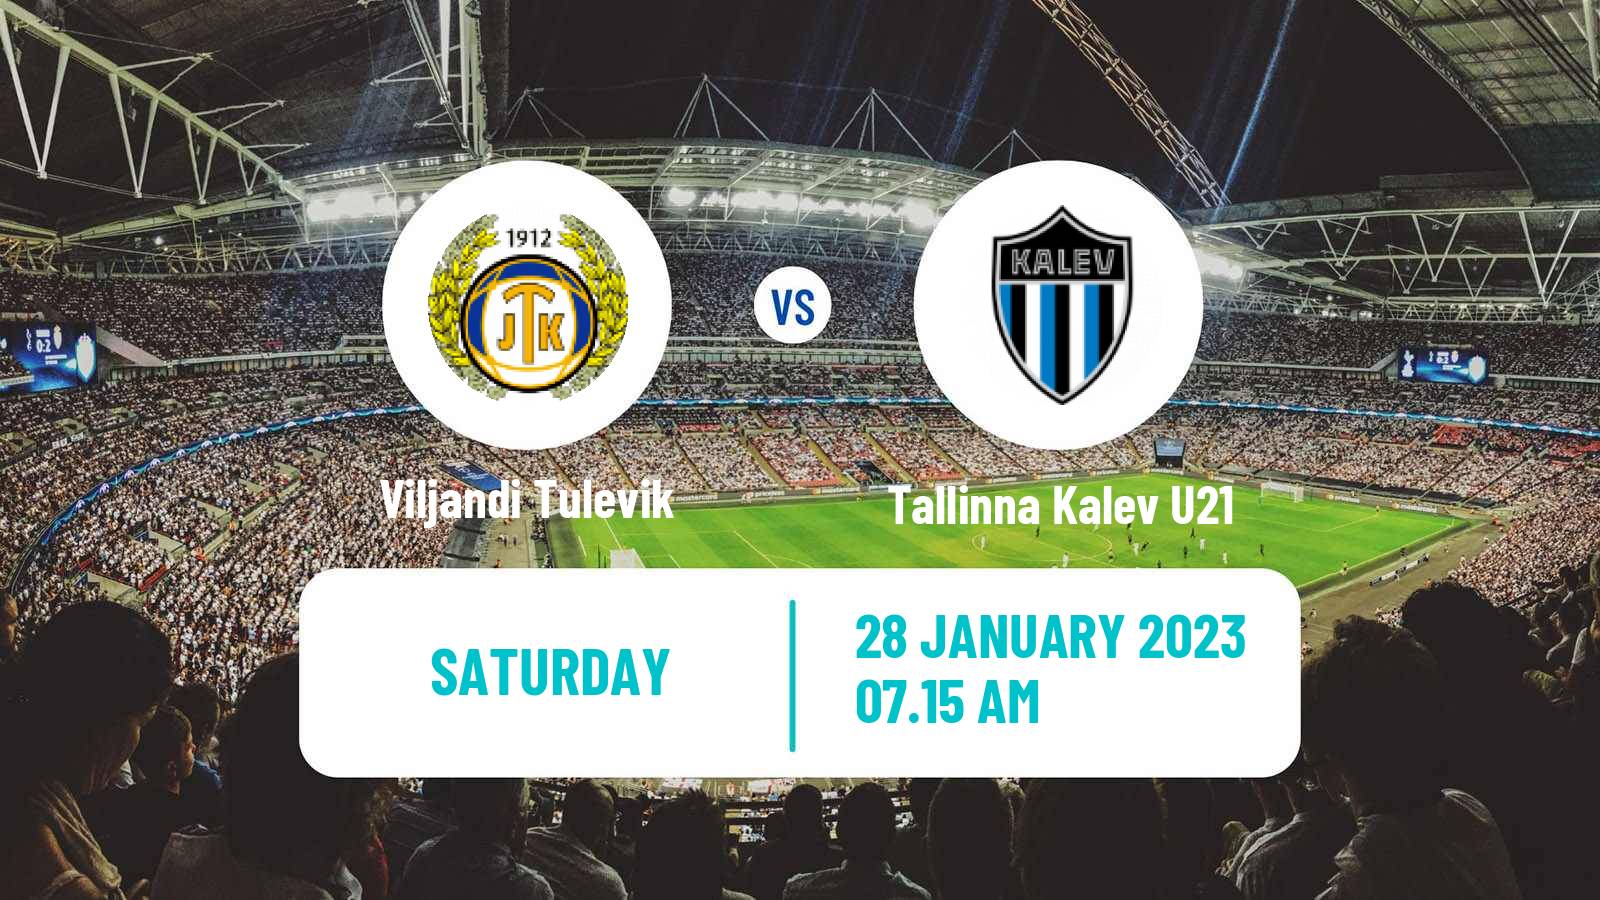 Soccer Club Friendly Viljandi Tulevik - Tallinna Kalev U21